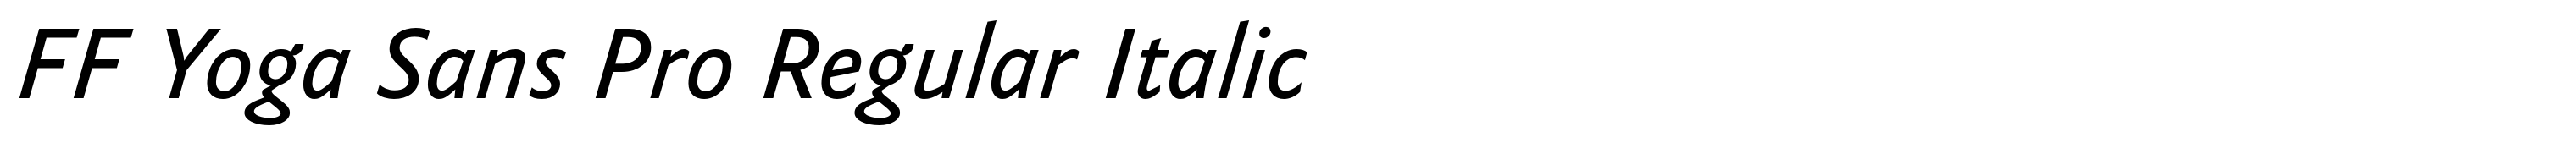 FF Yoga Sans Pro Regular Italic